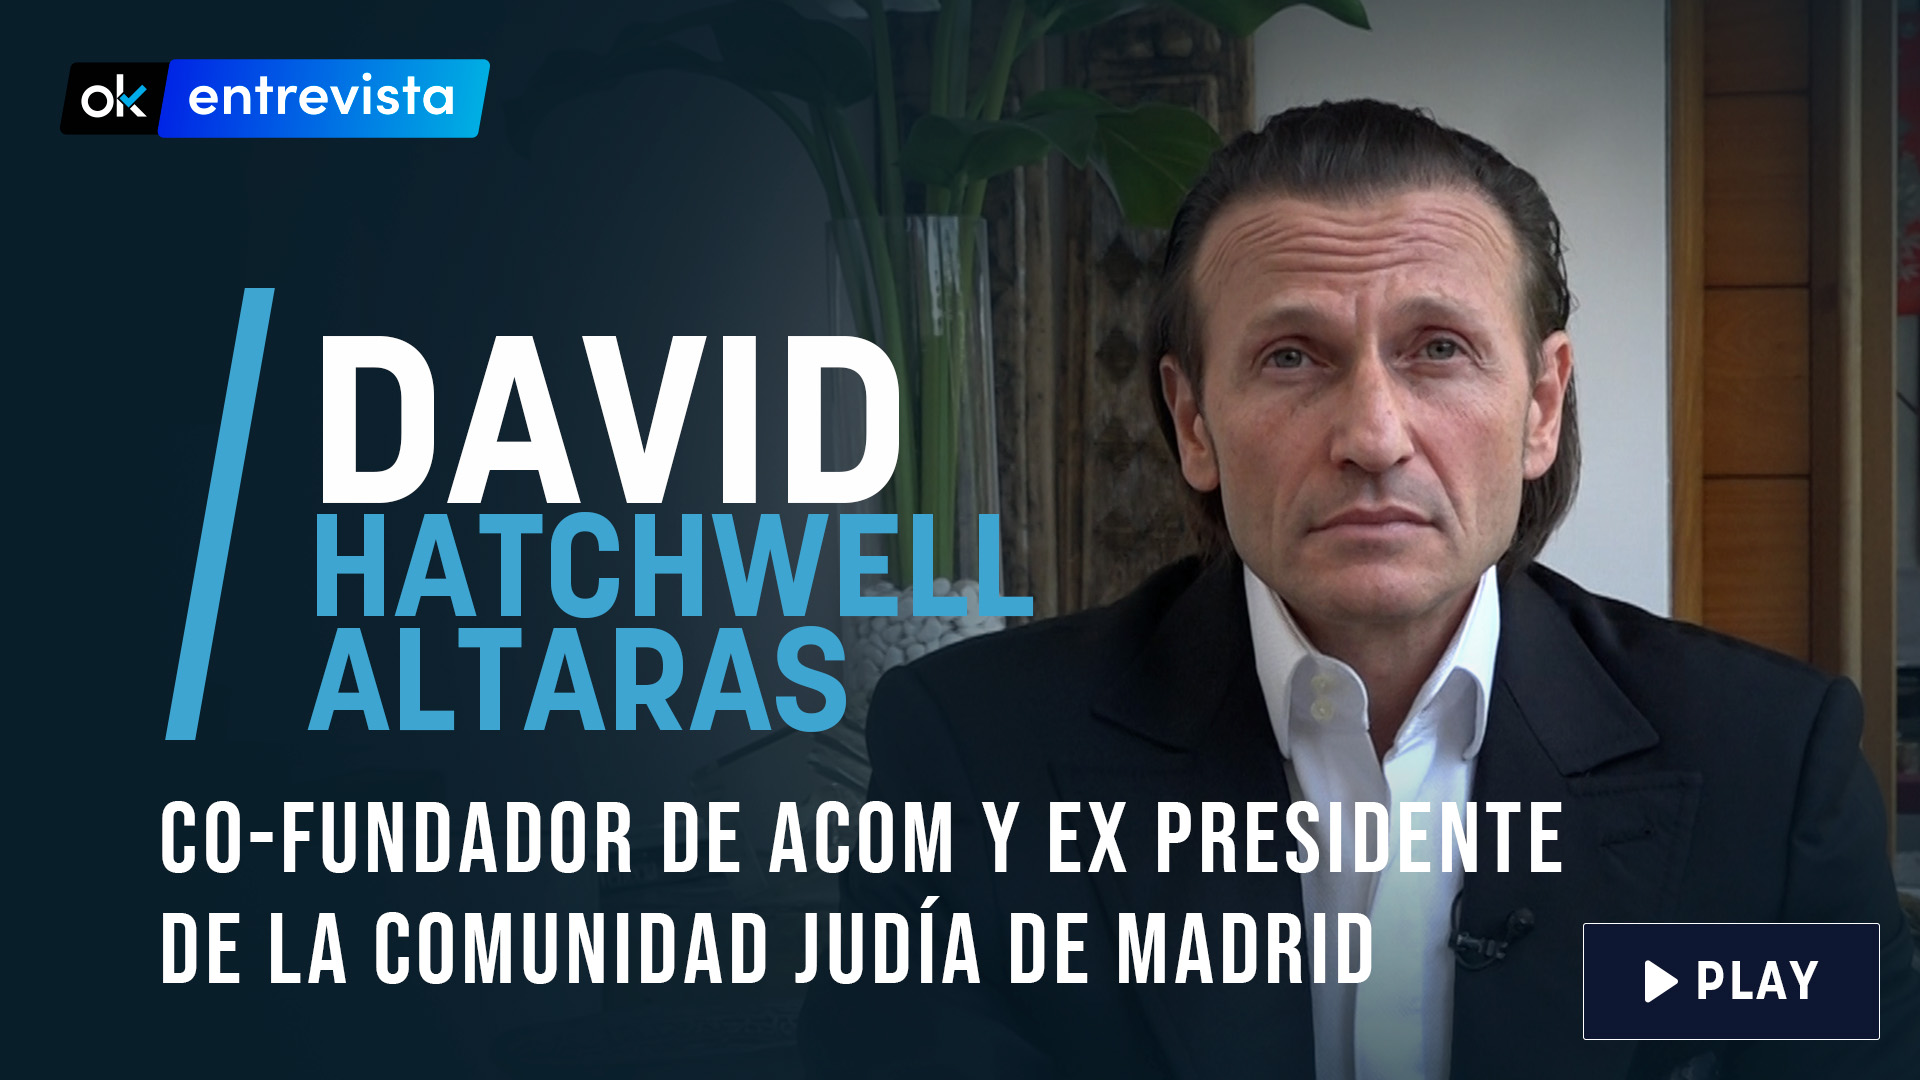 El ex presidente de la Comunidad Judía de Madrid, David Hatchwell Altaras